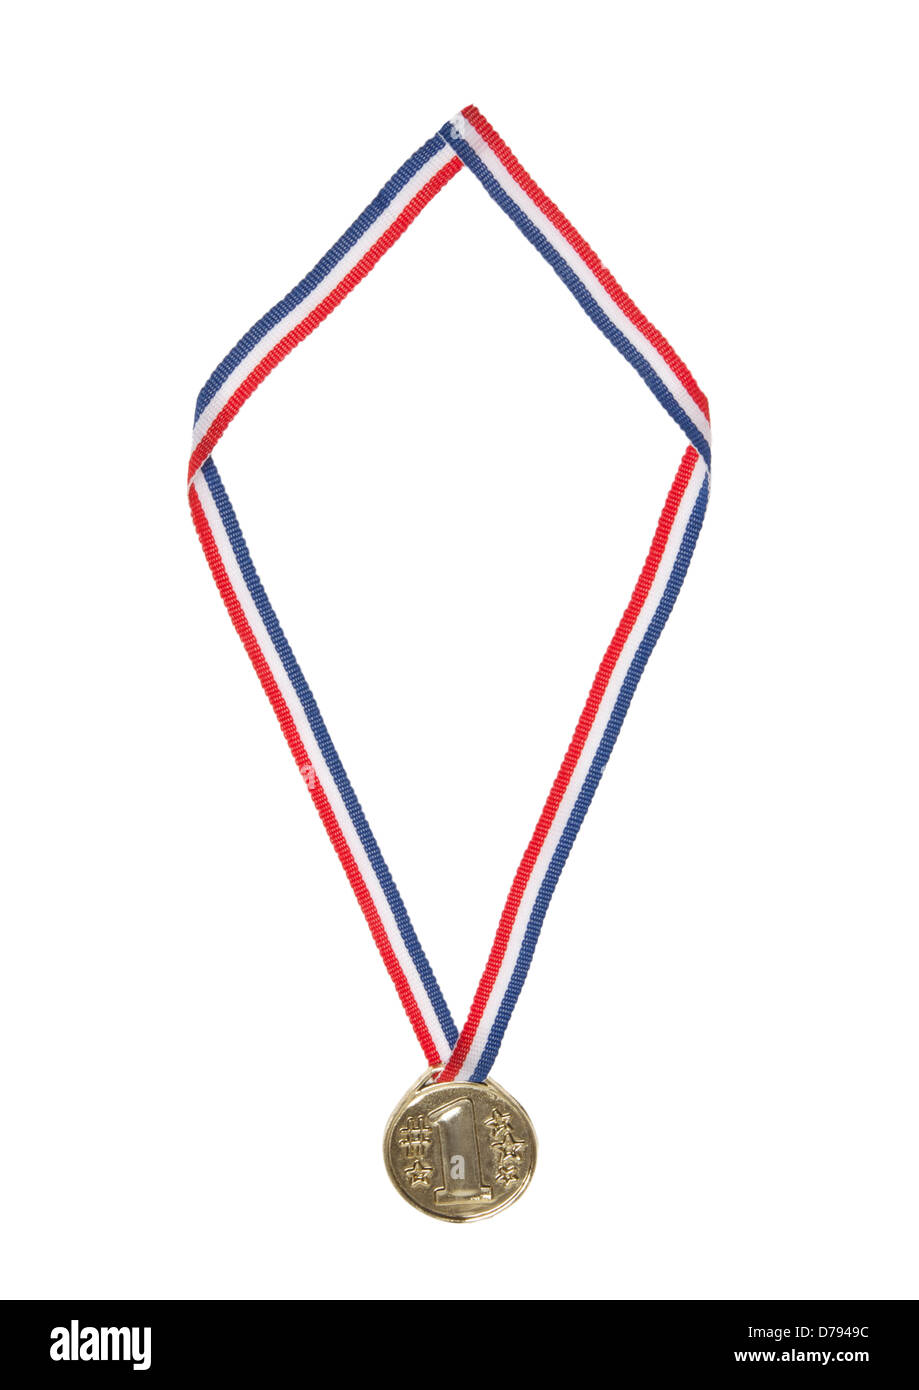 Médaille d'or 1 place st lauréats médaille sur fond blanc Banque D'Images